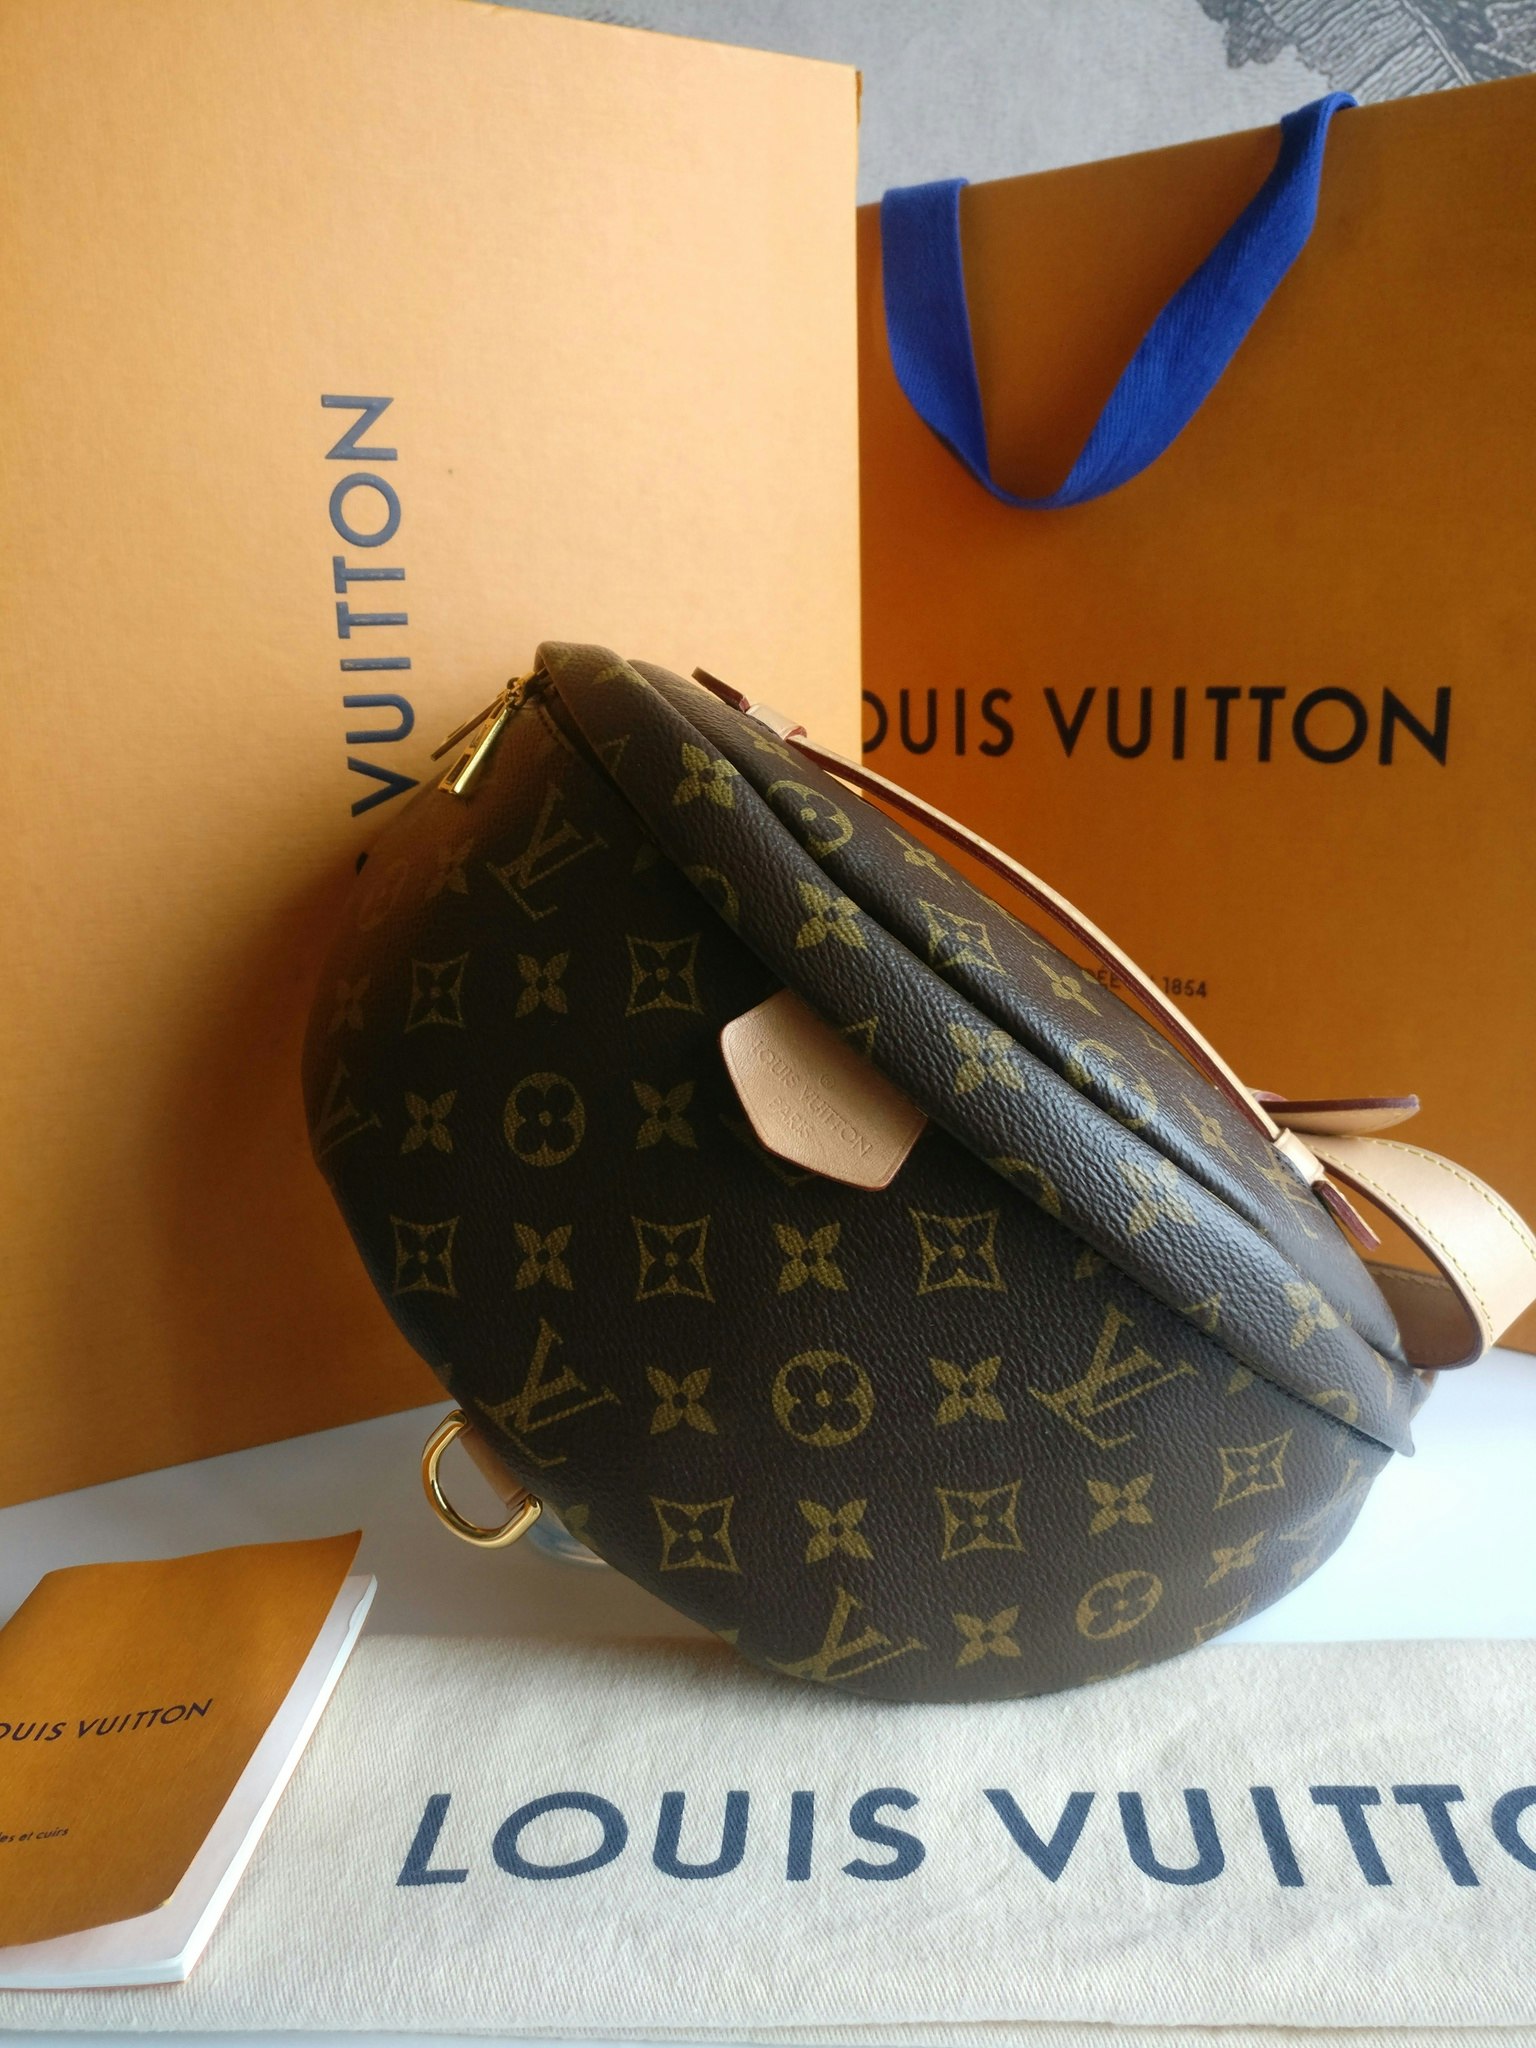 Louis Vuitton Bumbag - Good or Bag